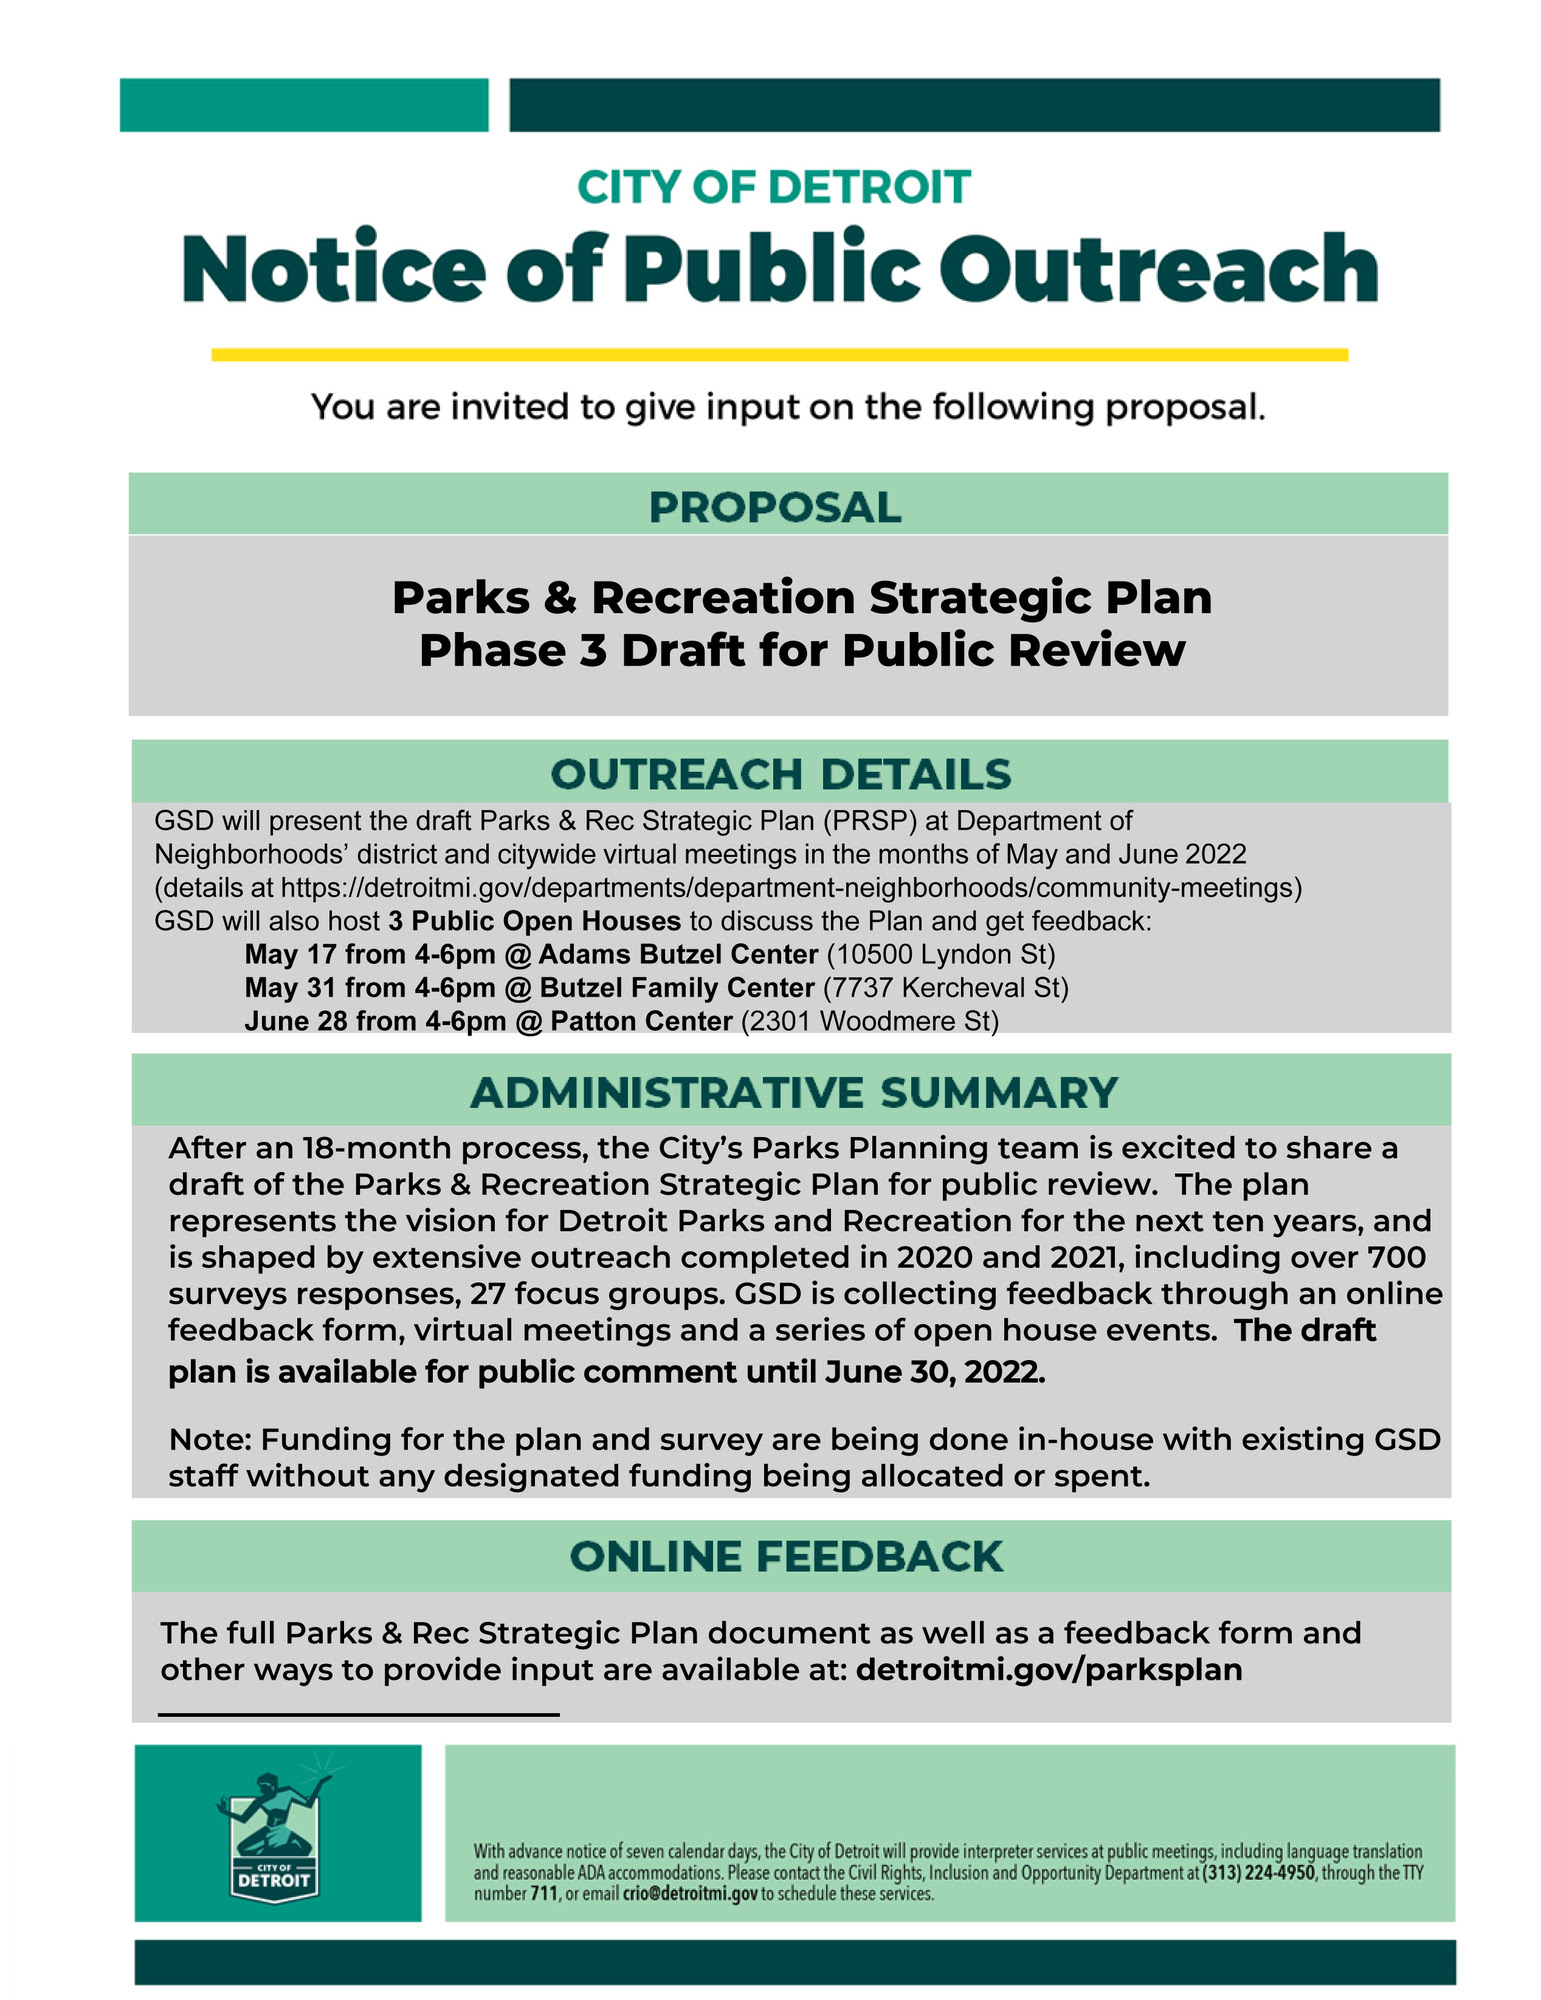 Parks & Recreation Strategic Plan Public Review